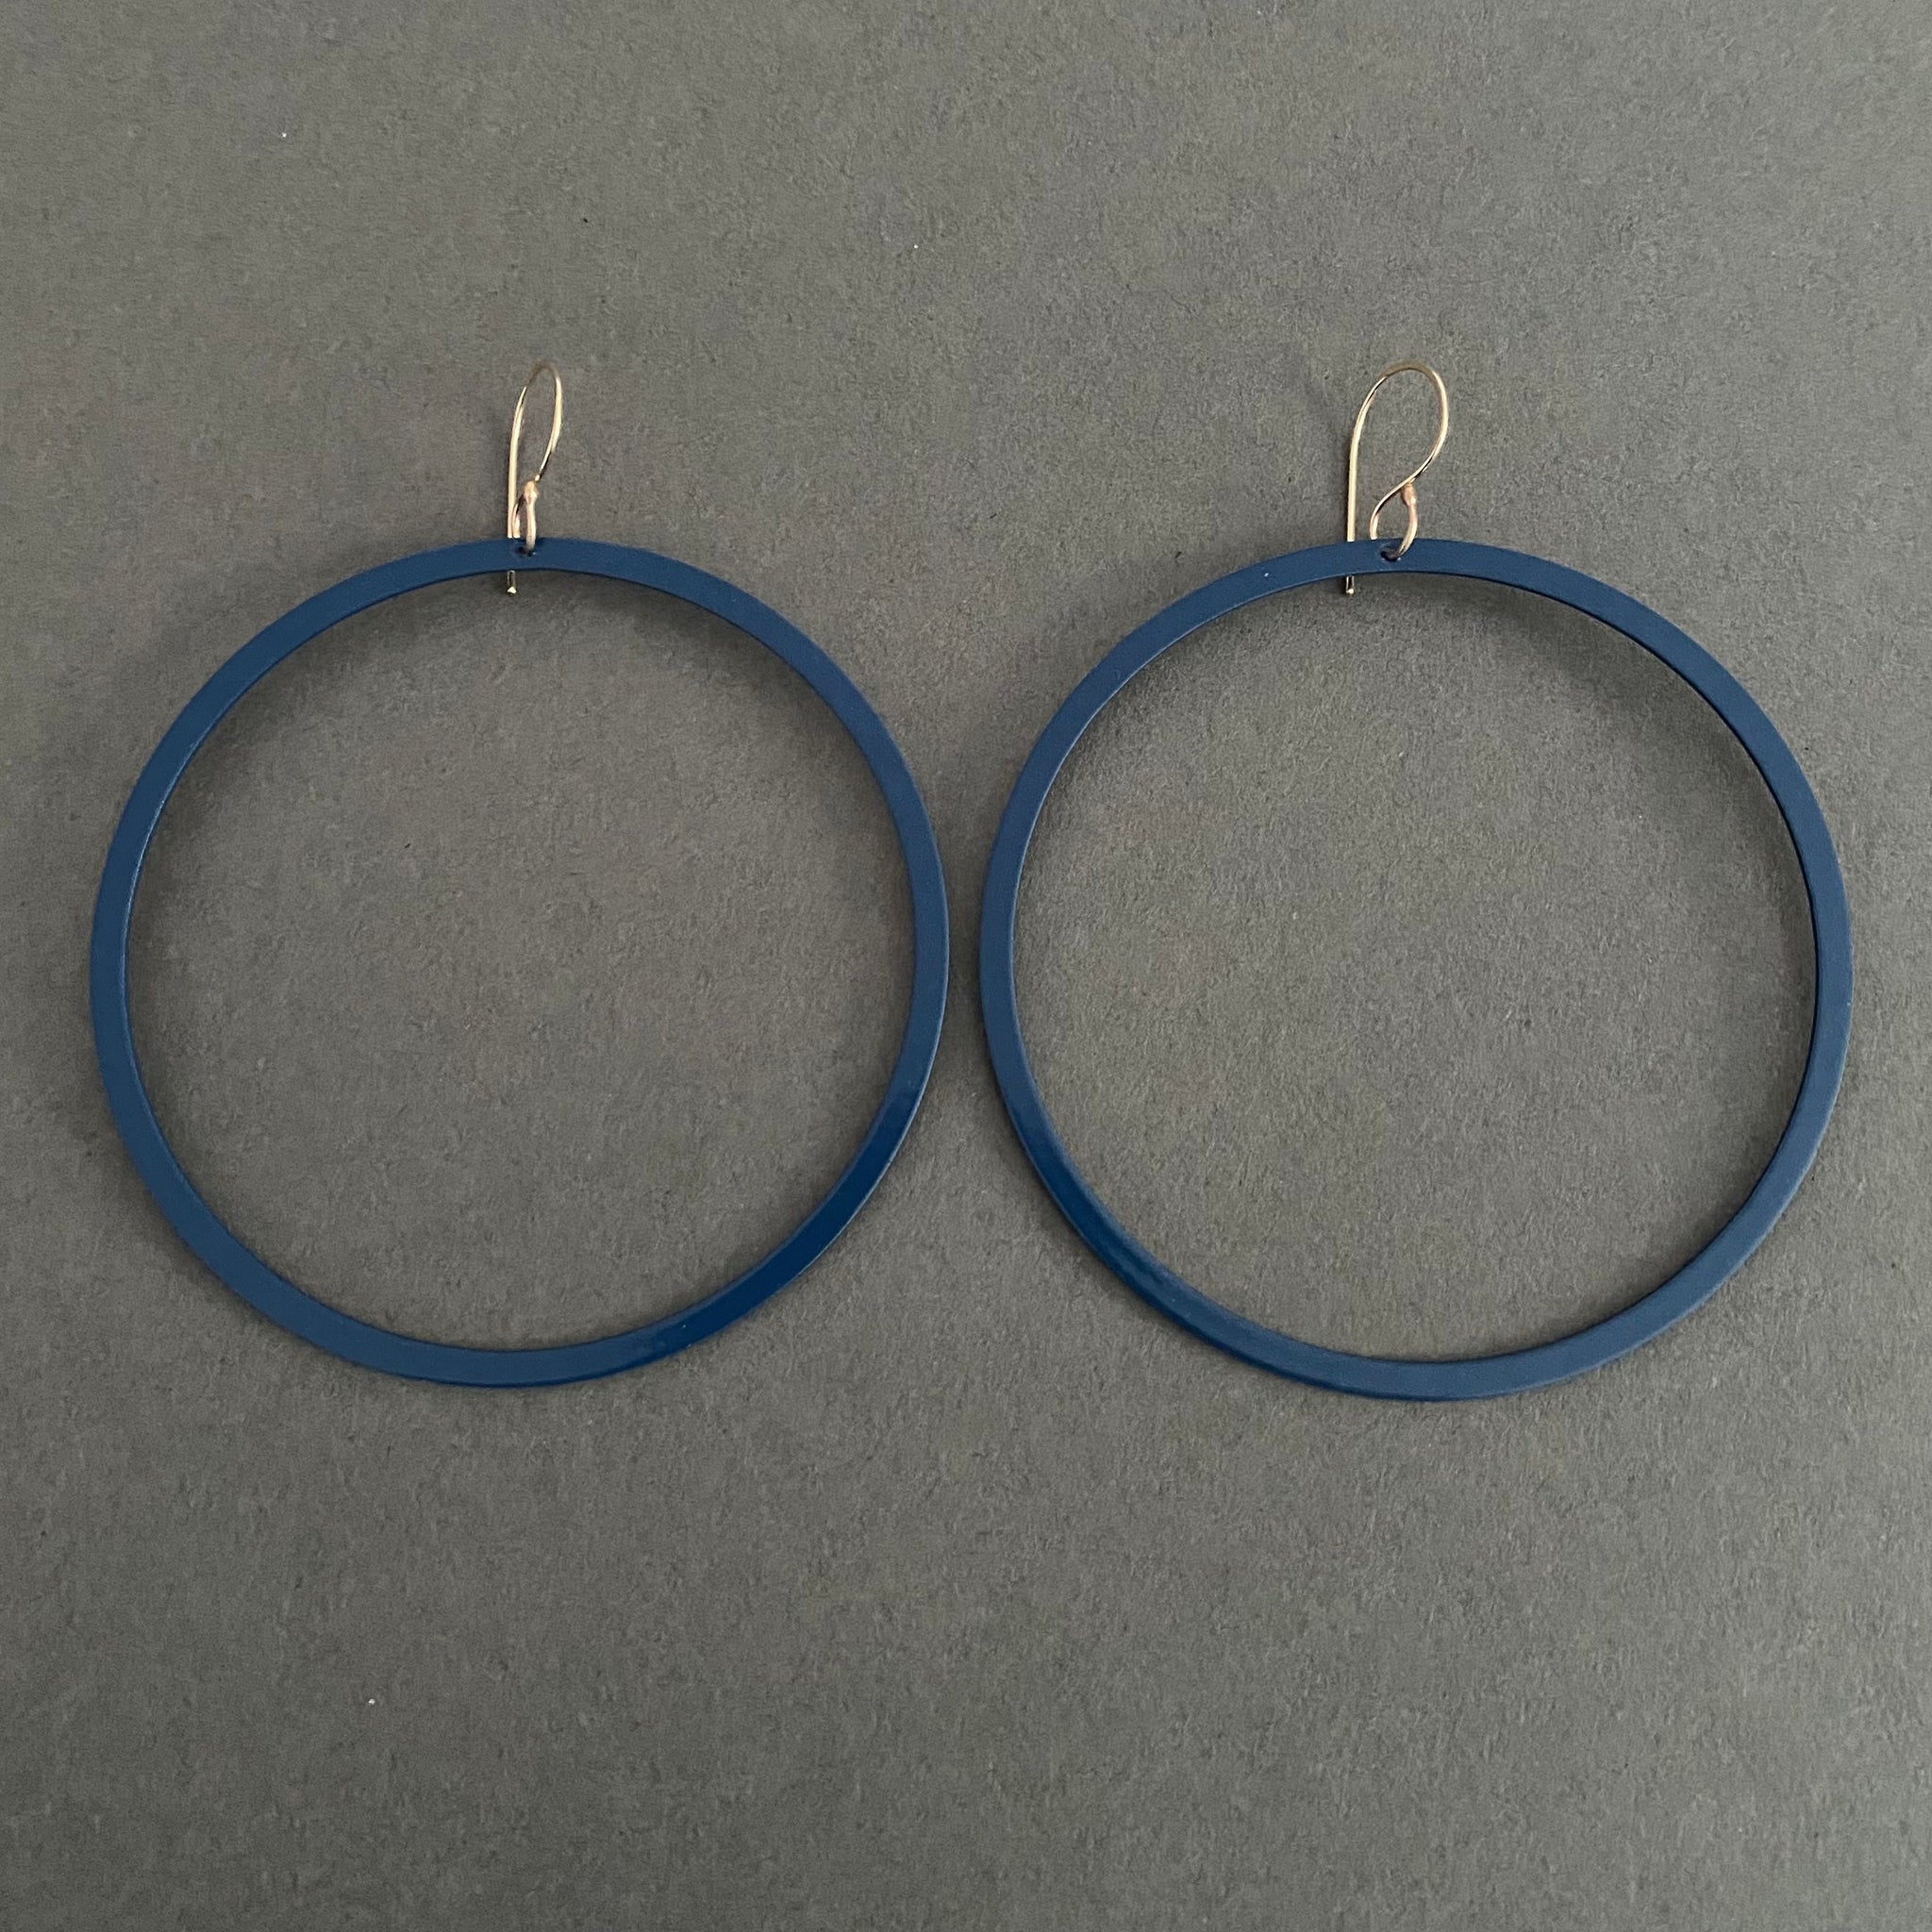 Bangle Earrings - Narrow, Cadet Blue